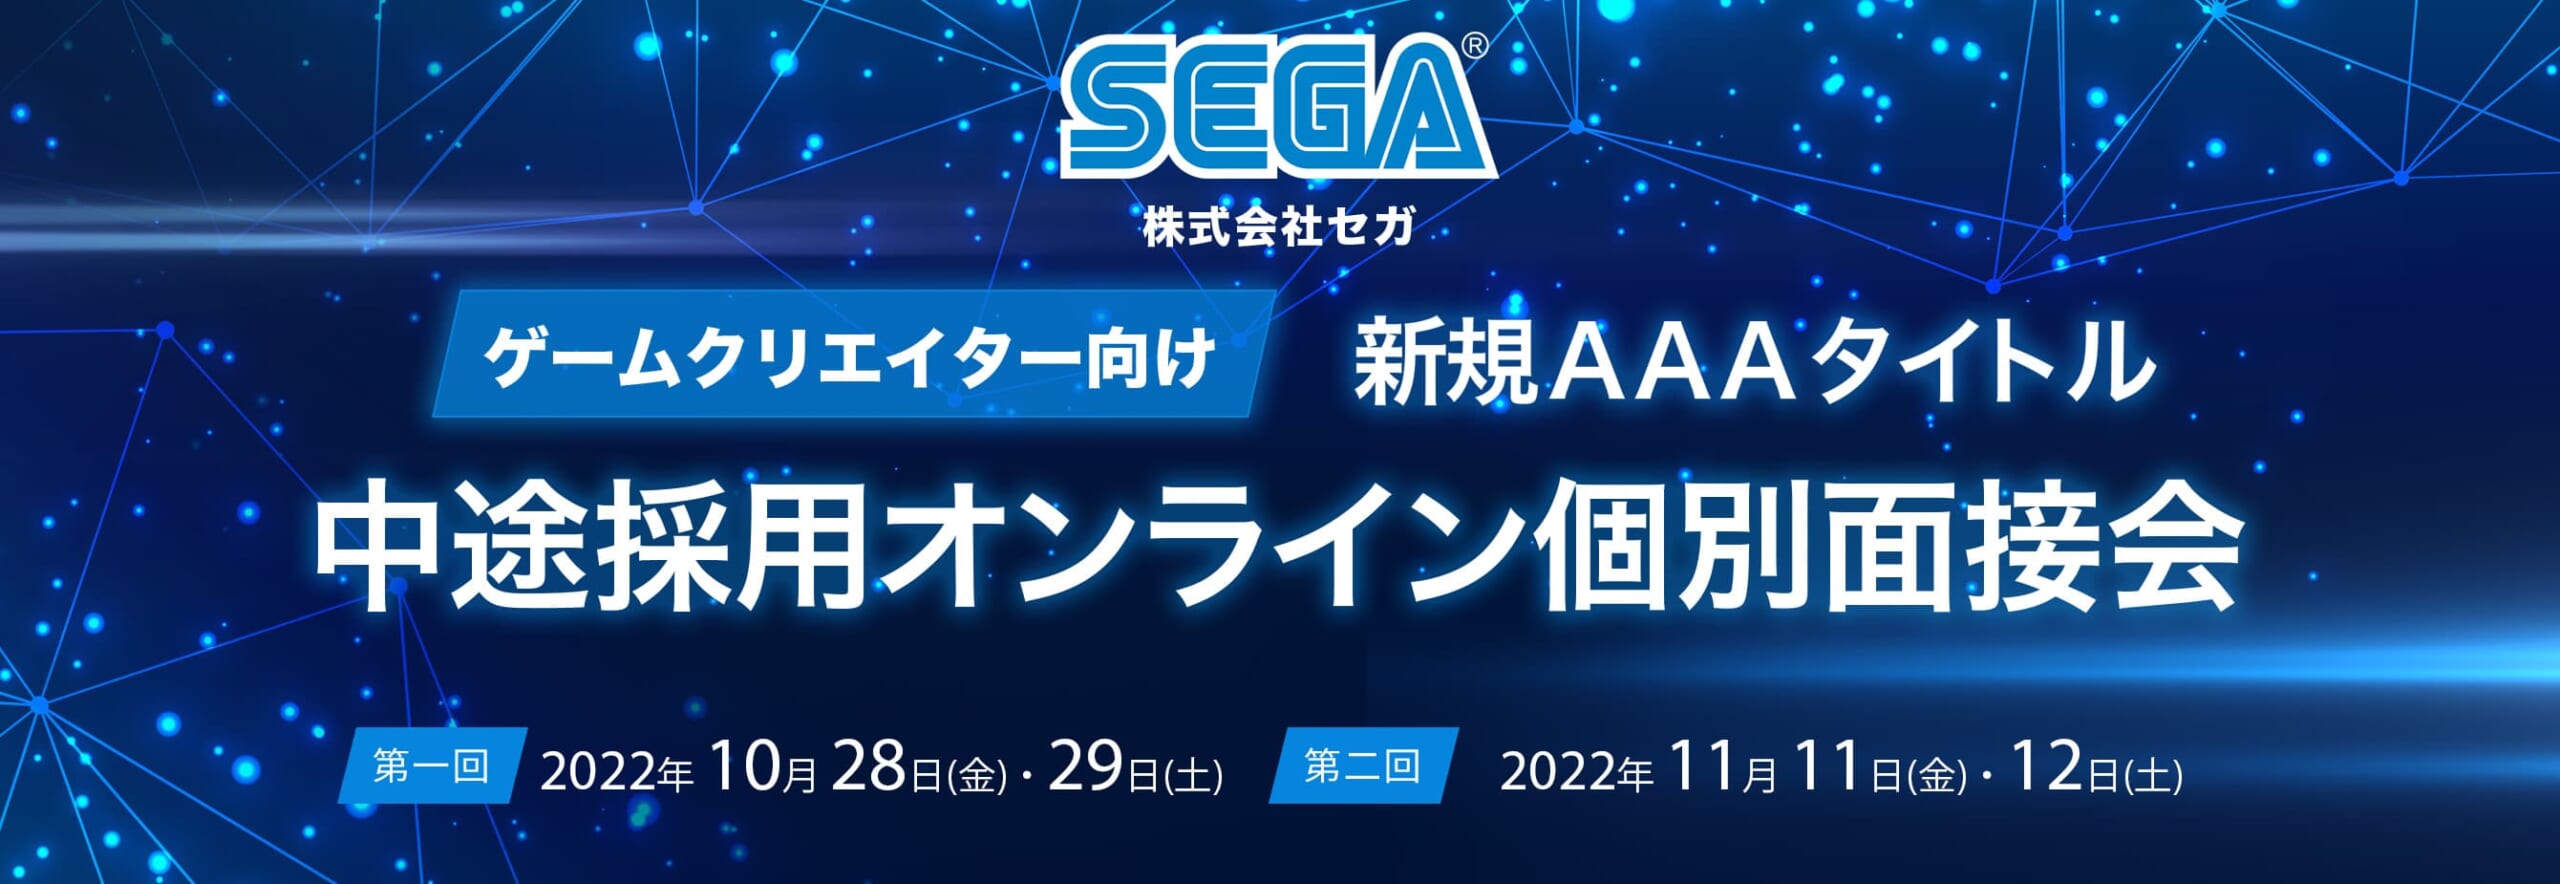 【新規AAAタイトル】株式会社セガ 中途採用オンライン個別面接会